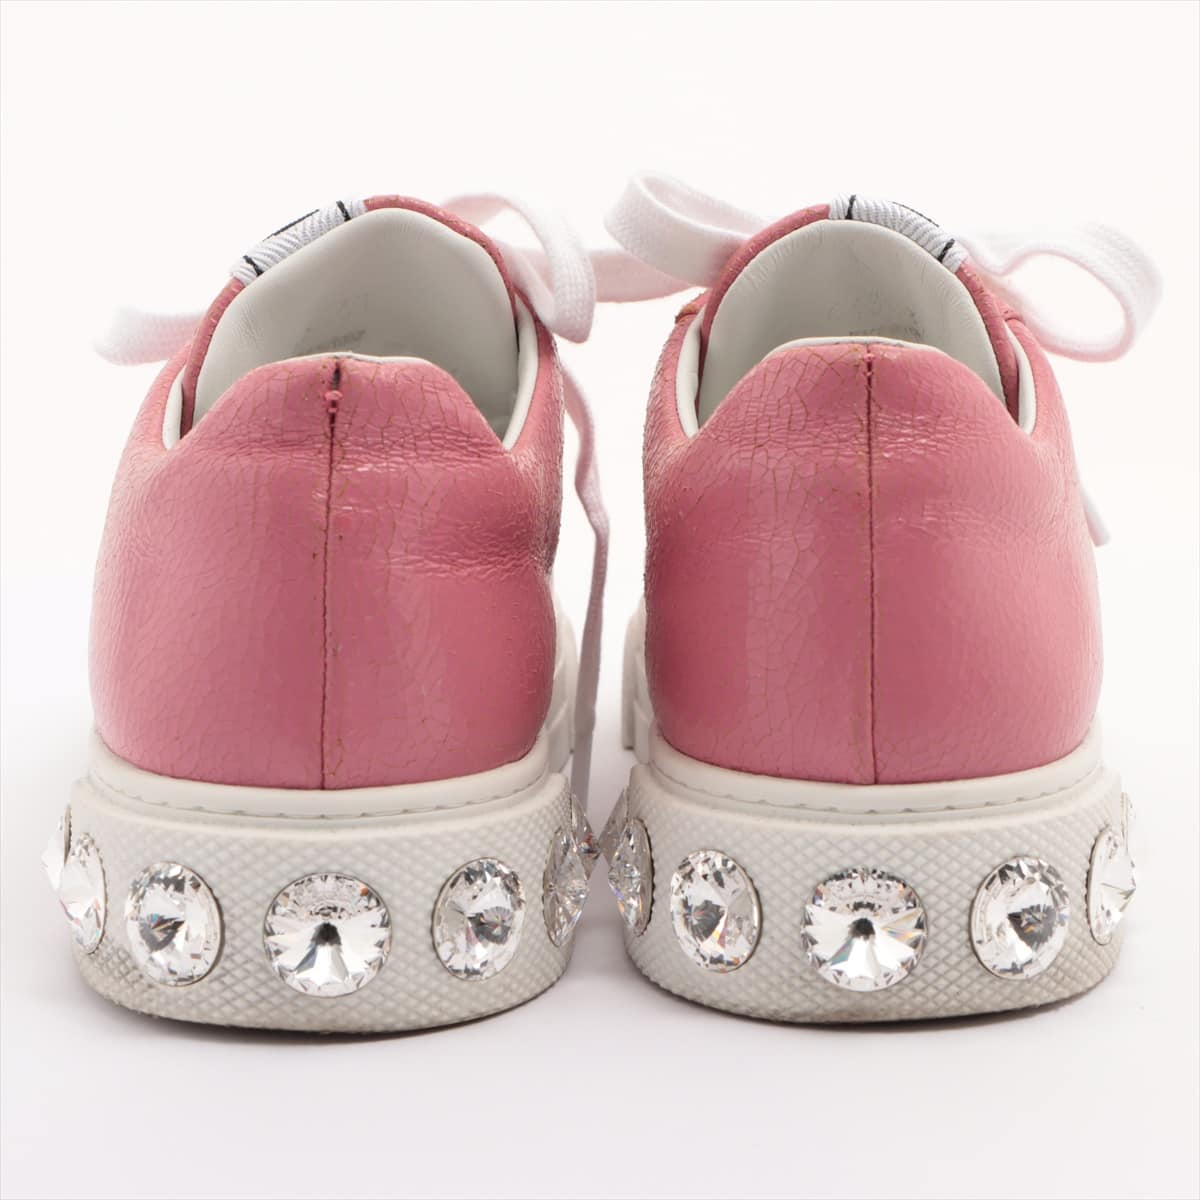 Miu Miu Leather Sneakers 37 Ladies' Pink Bijou